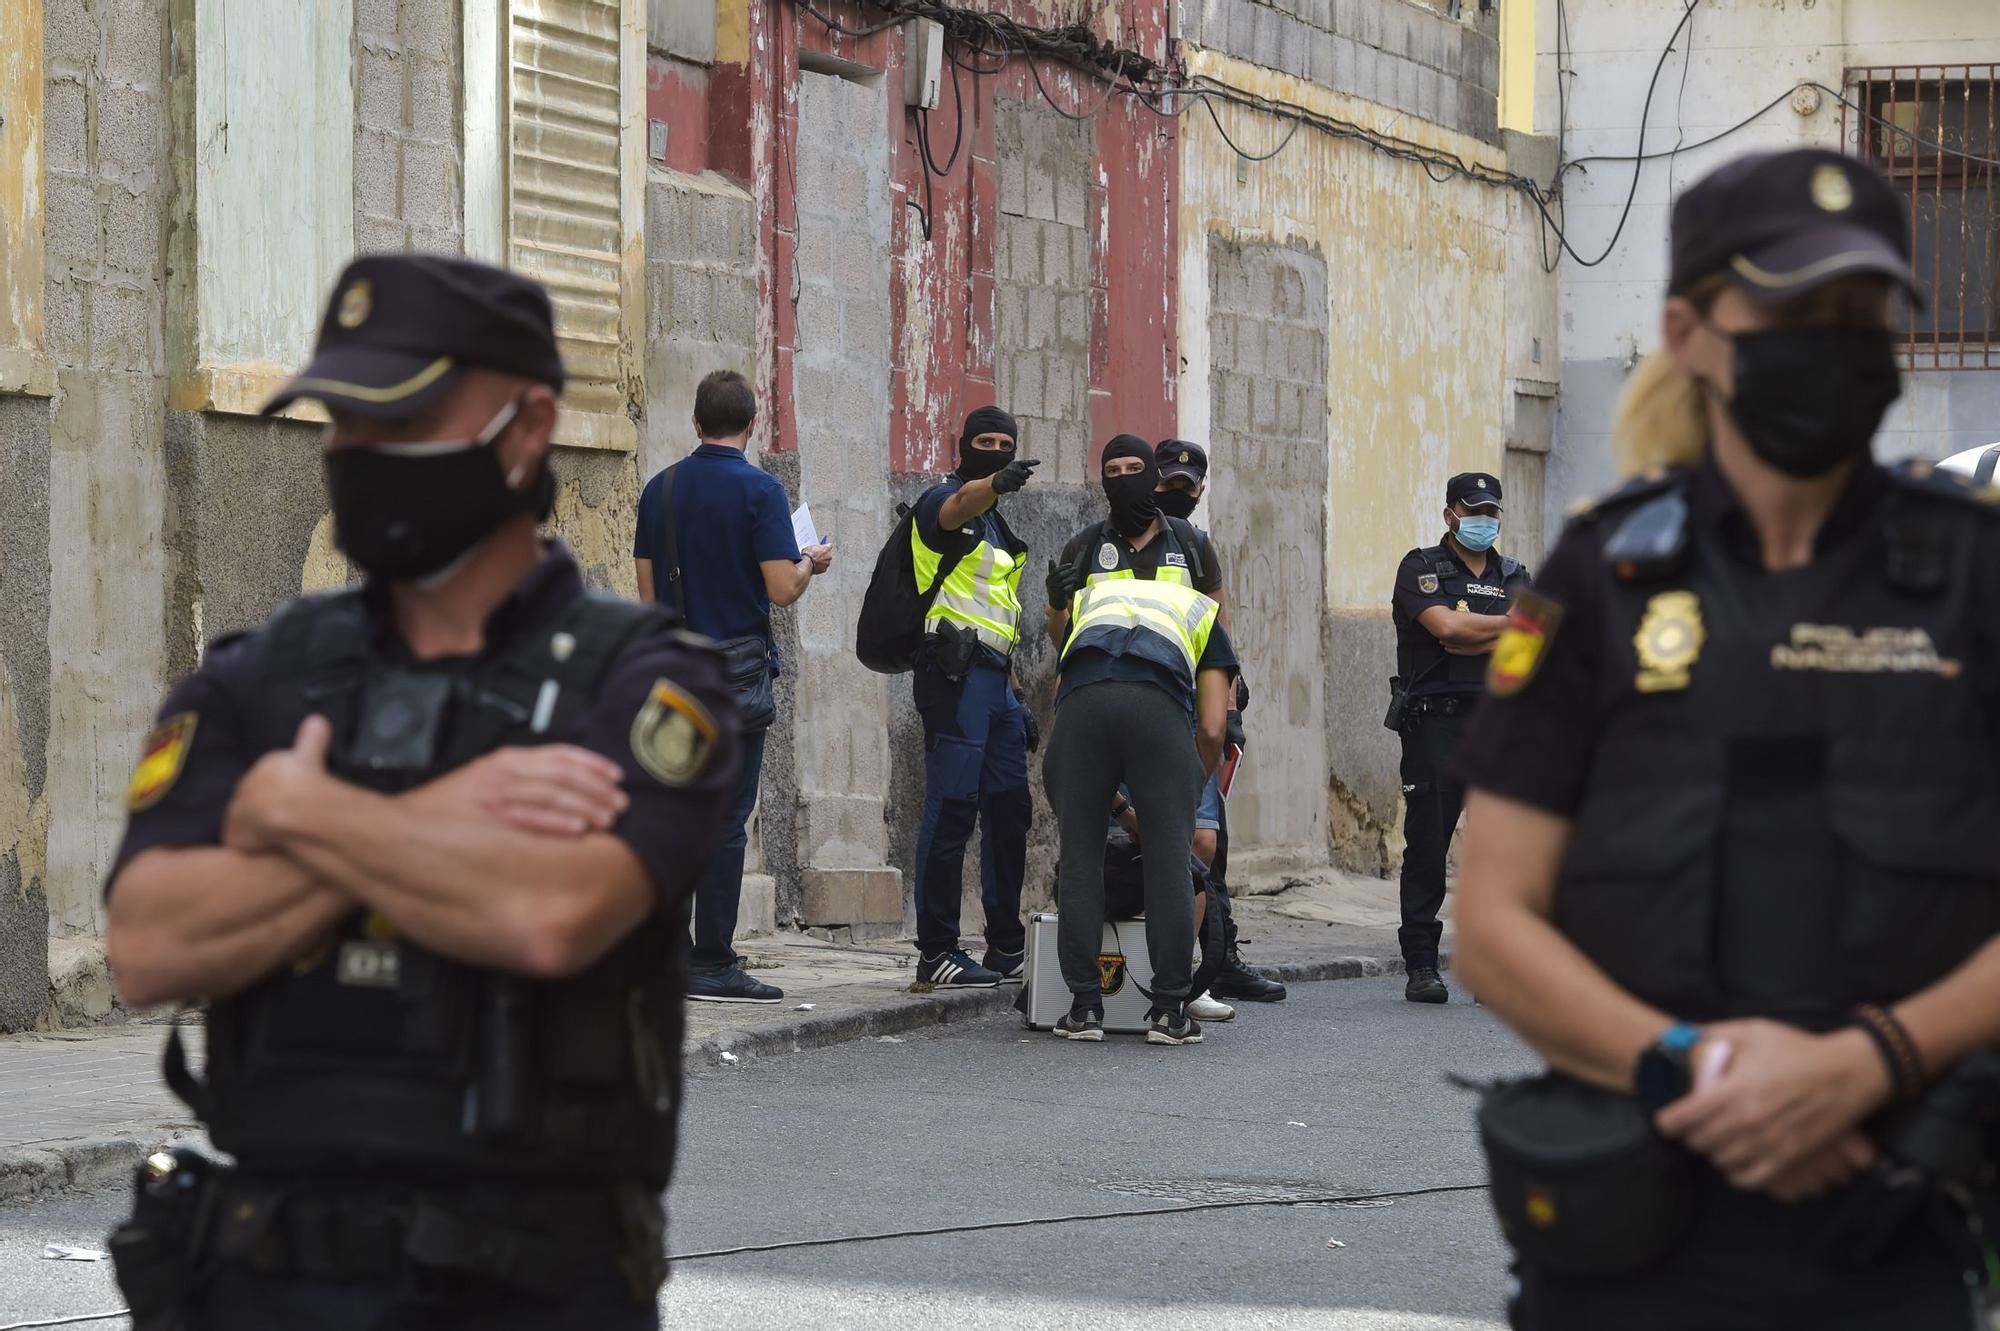 Intervenciones policiales en las calles Andamana y Sanzofé en La Isleta para erradicar puntos de venta de droga (26/08/2021)